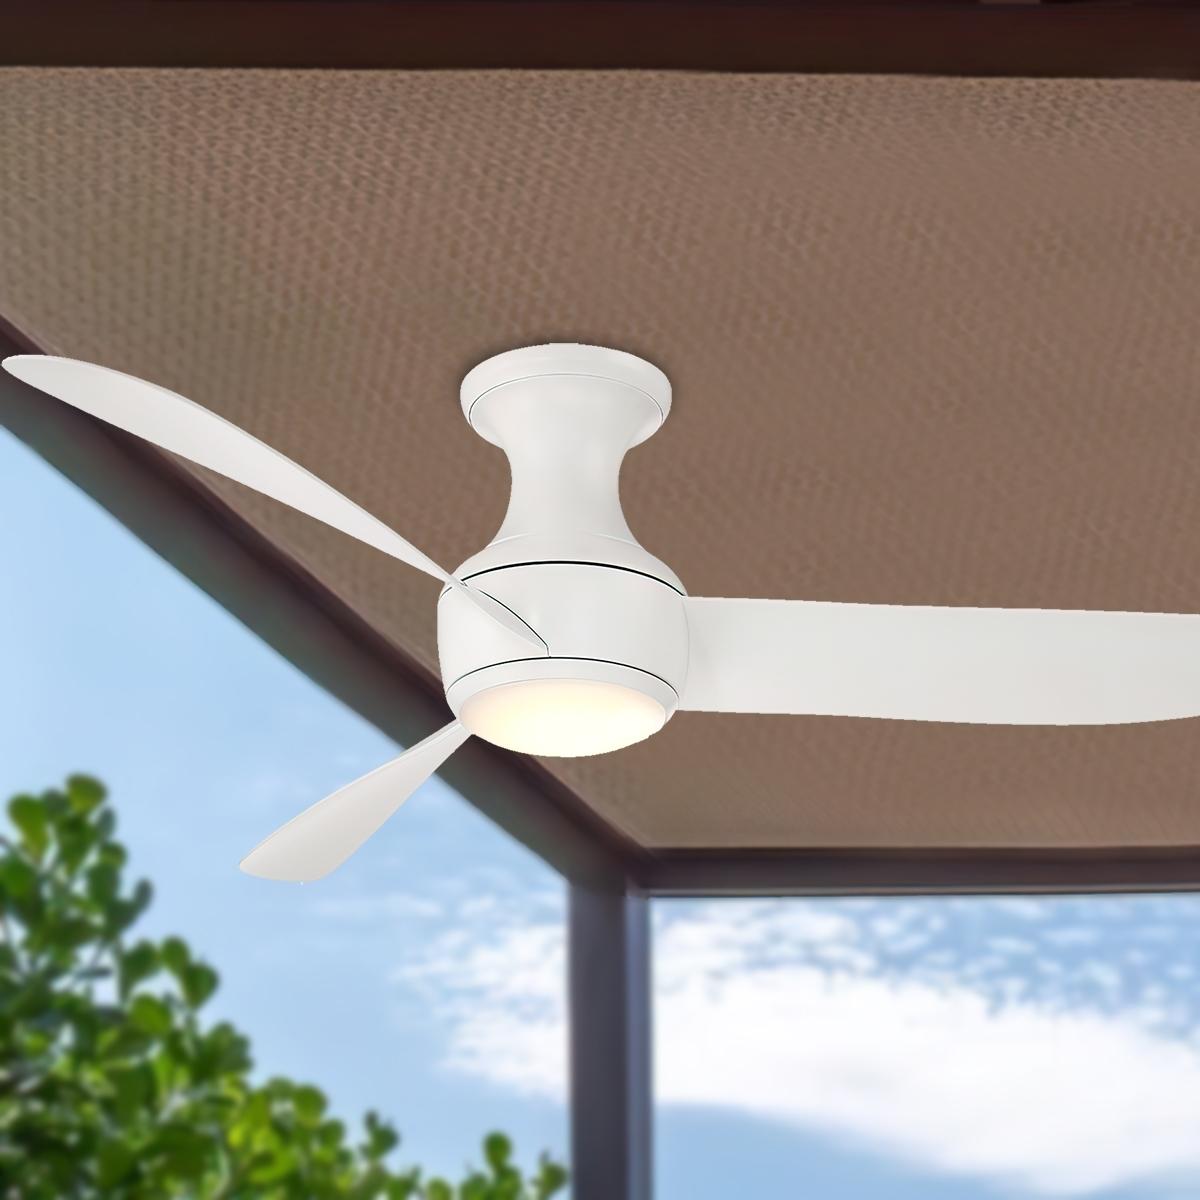 Modern Forms - Corona 52 Inch Modern Outdoor Smart Ceiling Fan